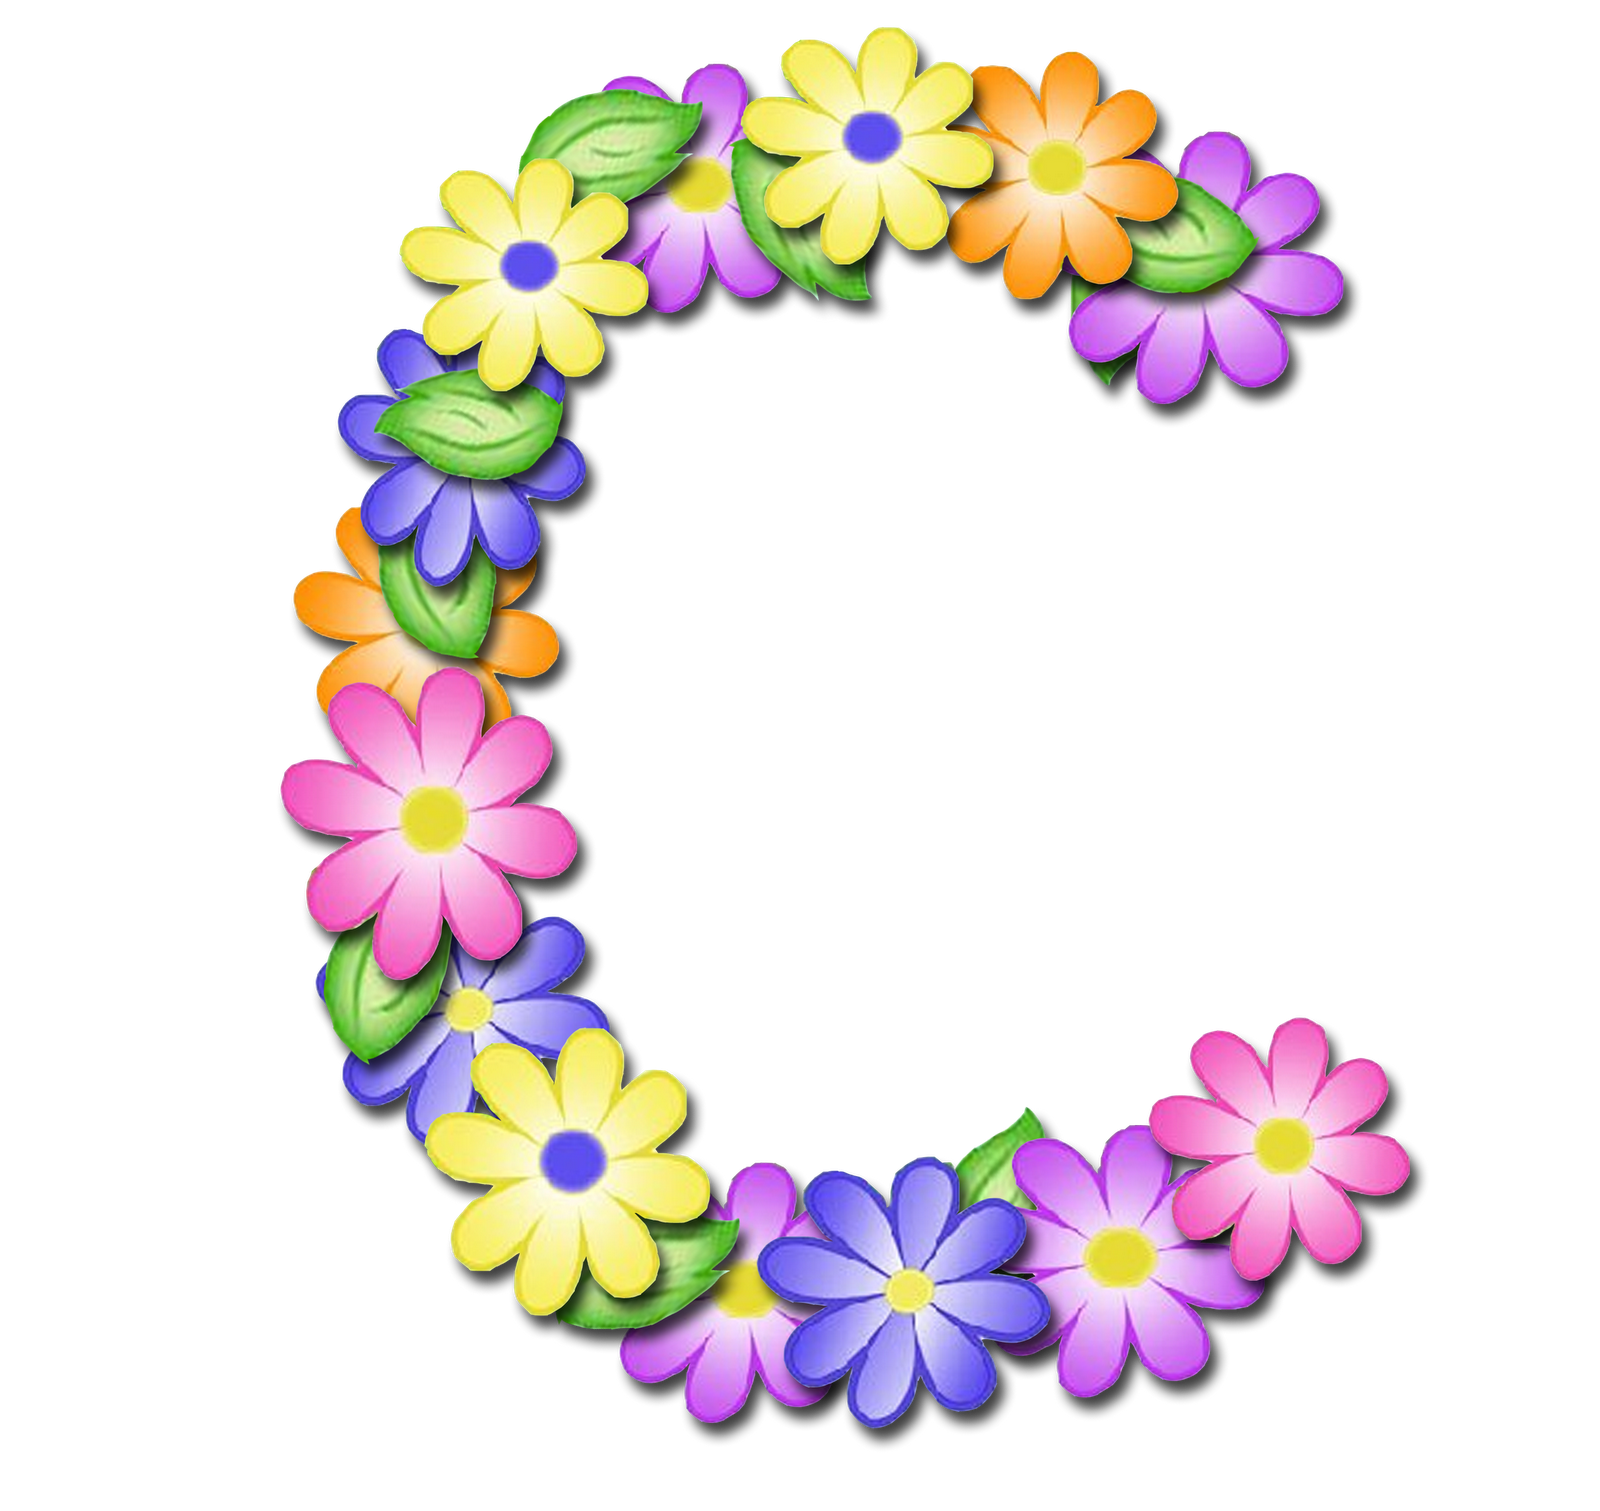 صور الحروف الإنجليزية بأجمل الزهور والورود بخلفية شفافة بنج png وجودة عالية للمصممين :: إبحث عن حروف إسمك بالإنجليزية P_1699pwrm53